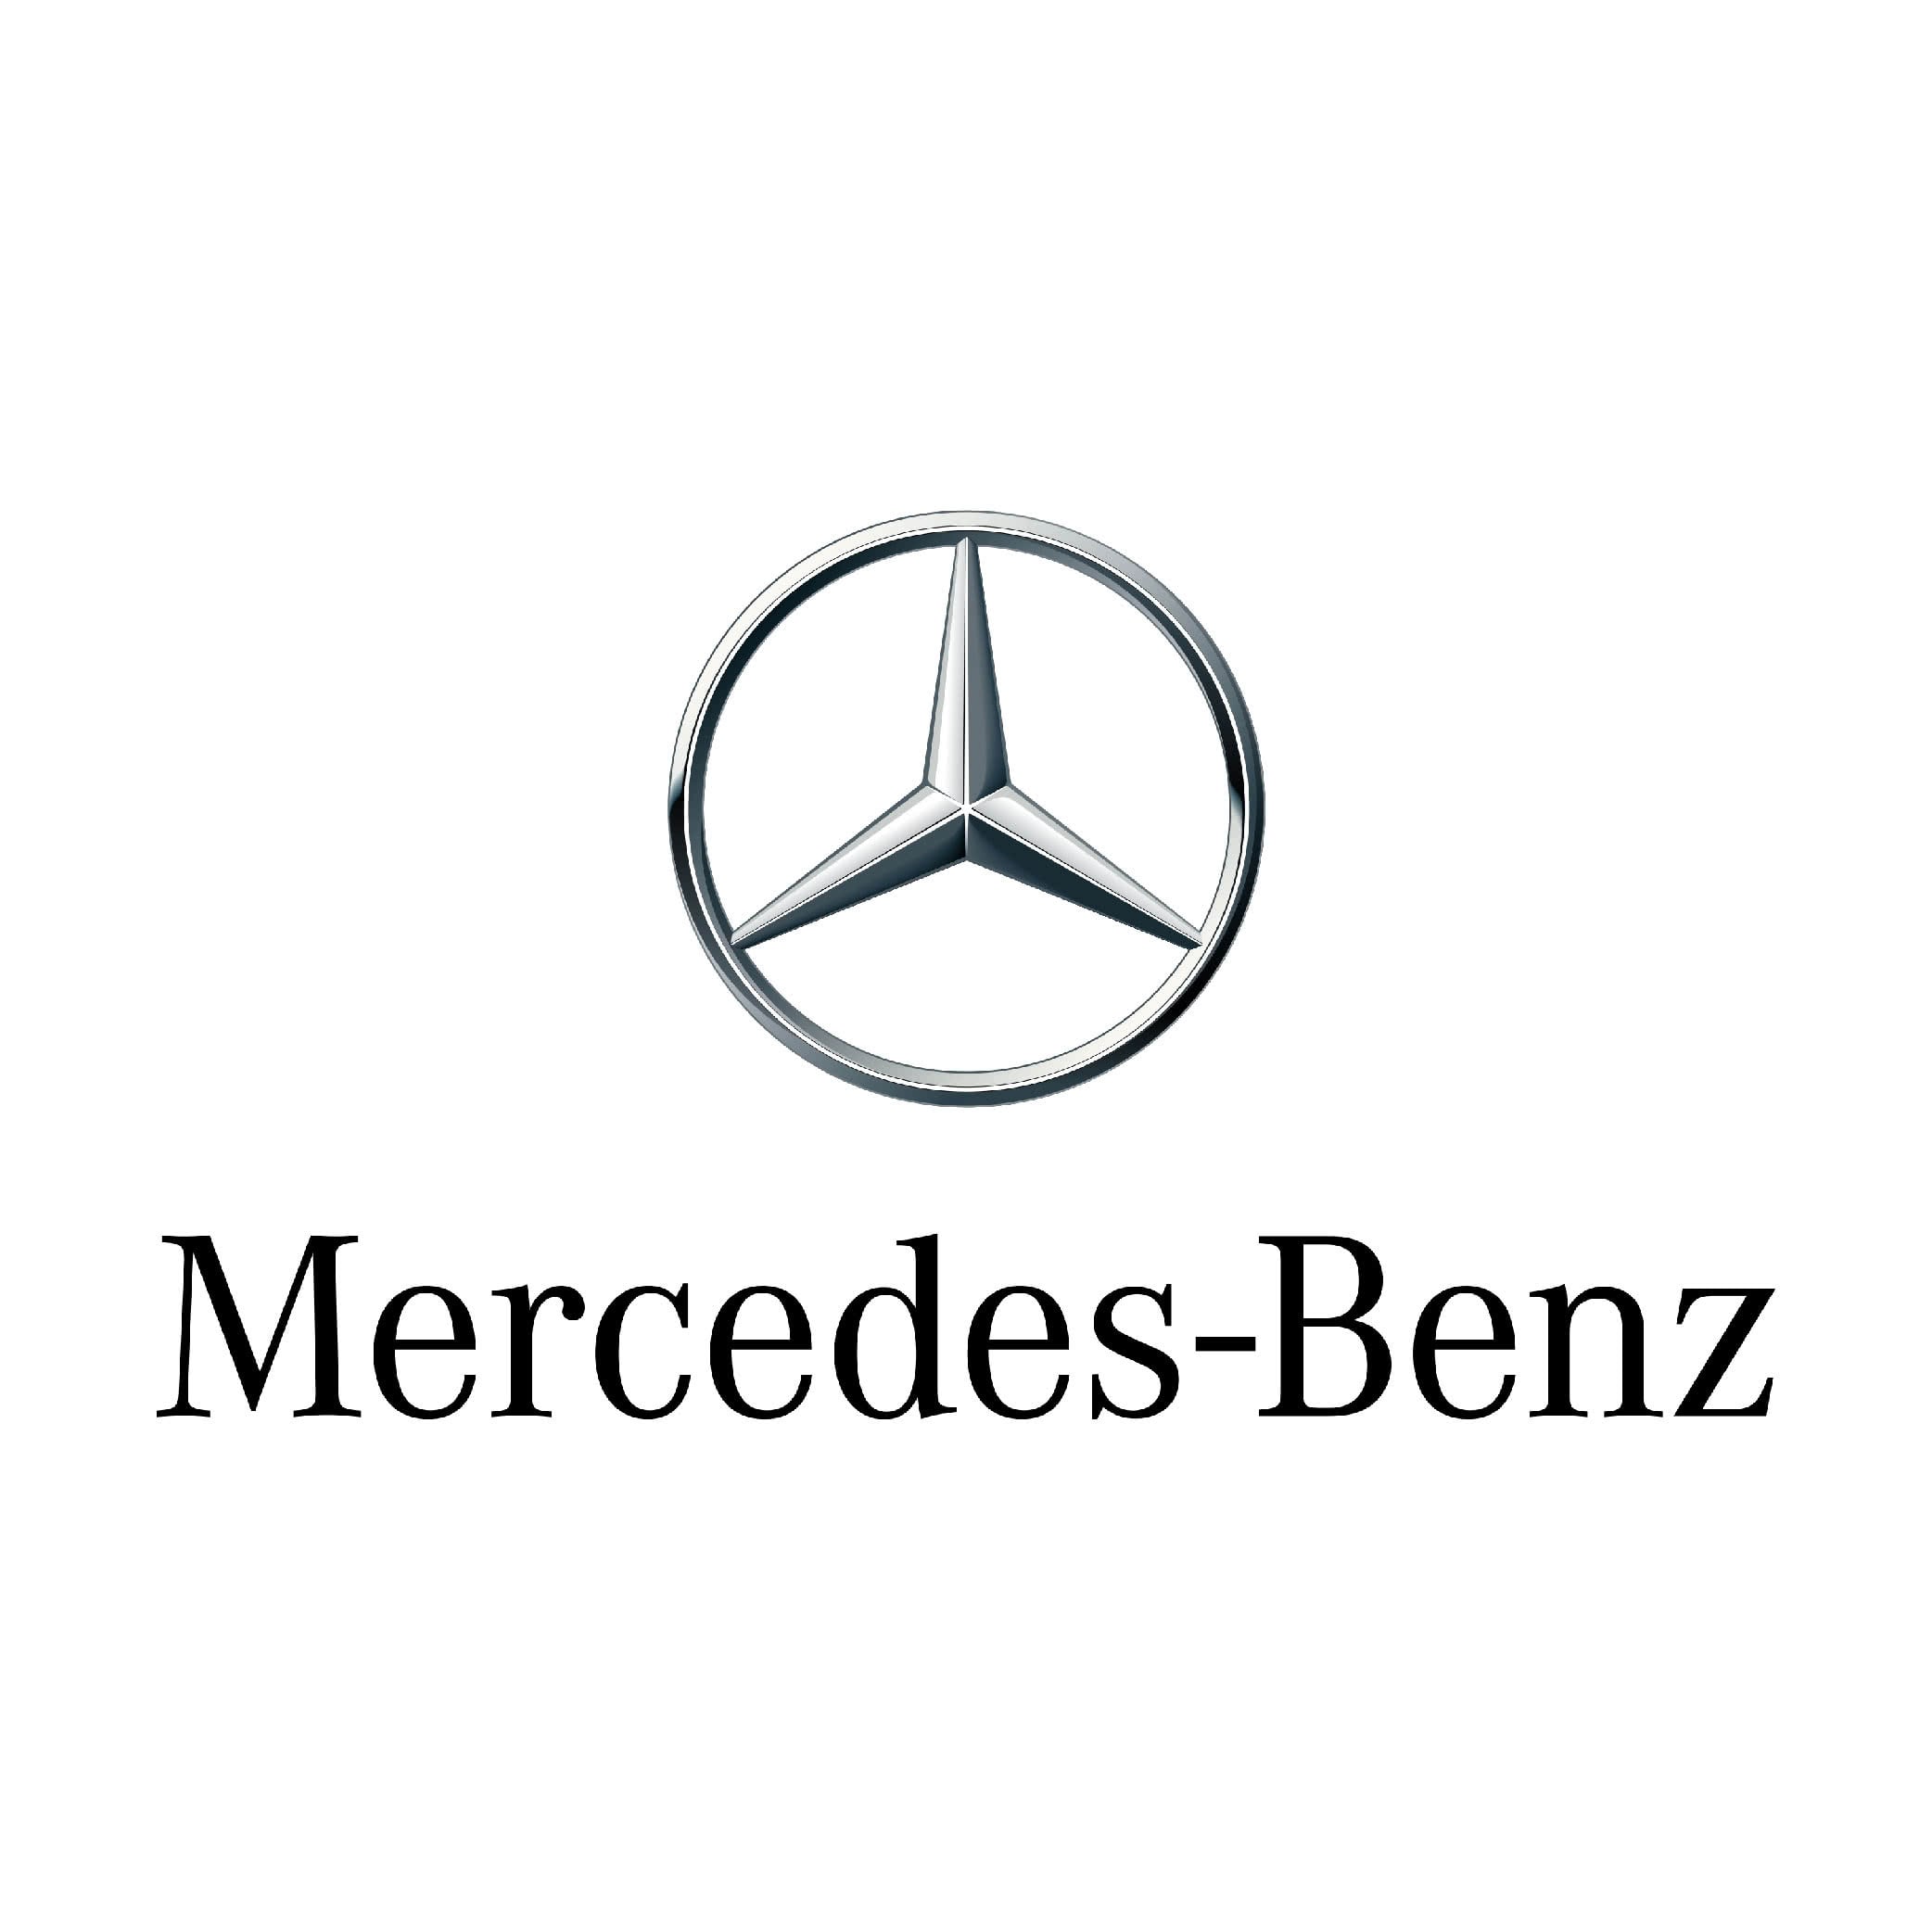 Client Atoo Next Mercedes Benz